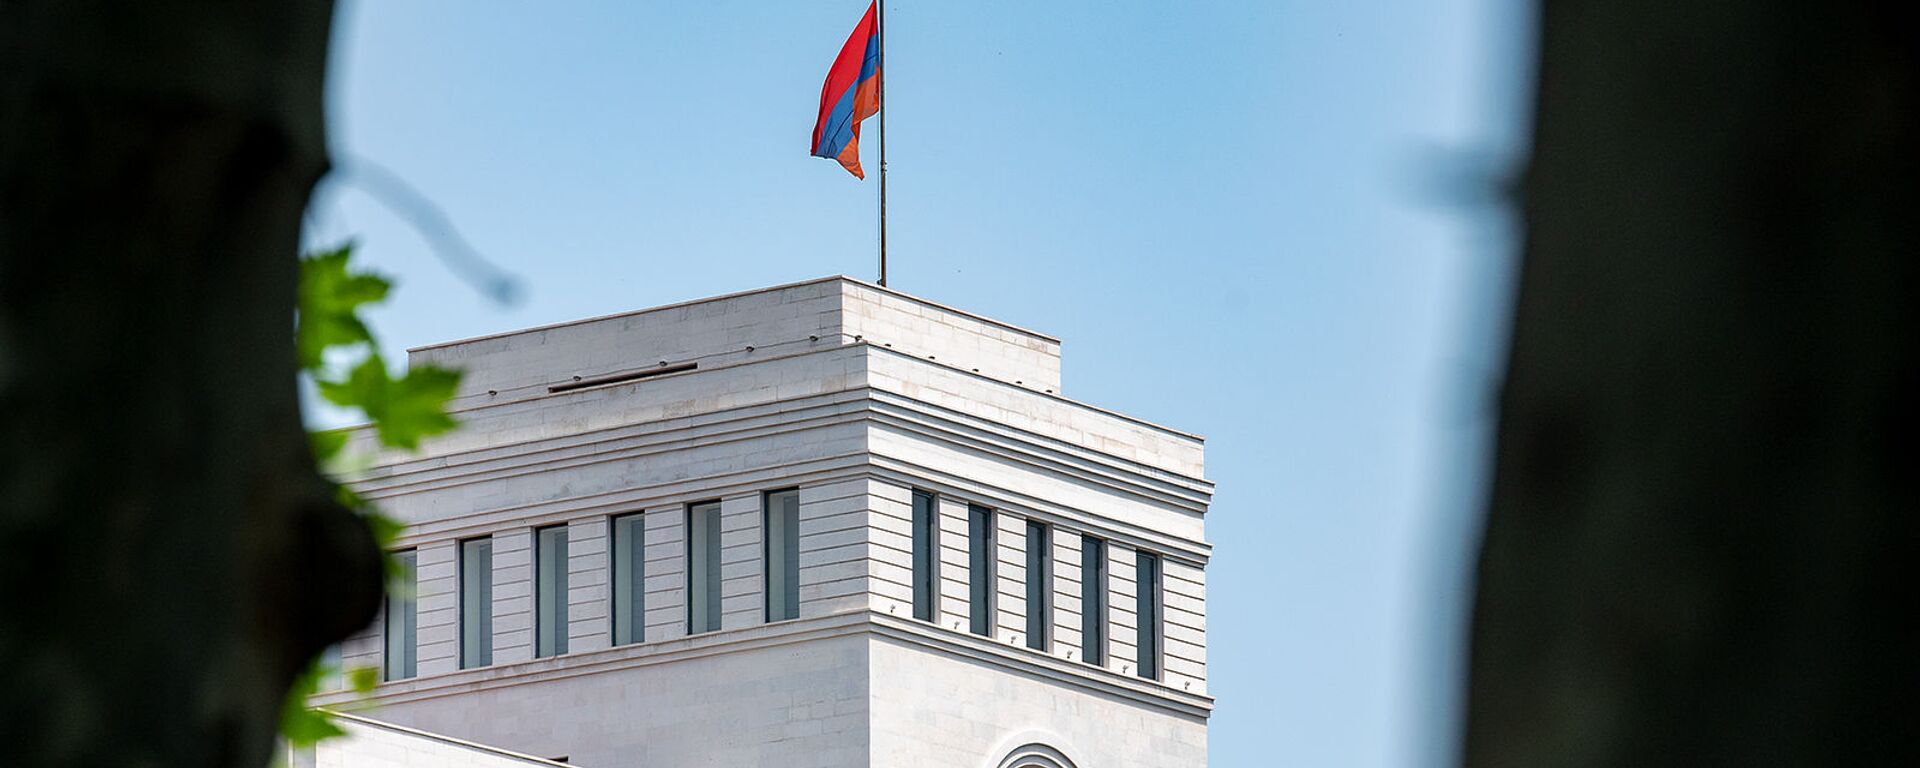 Здание Министерства иностранных дел Армении - Sputnik Армения, 1920, 11.08.2021